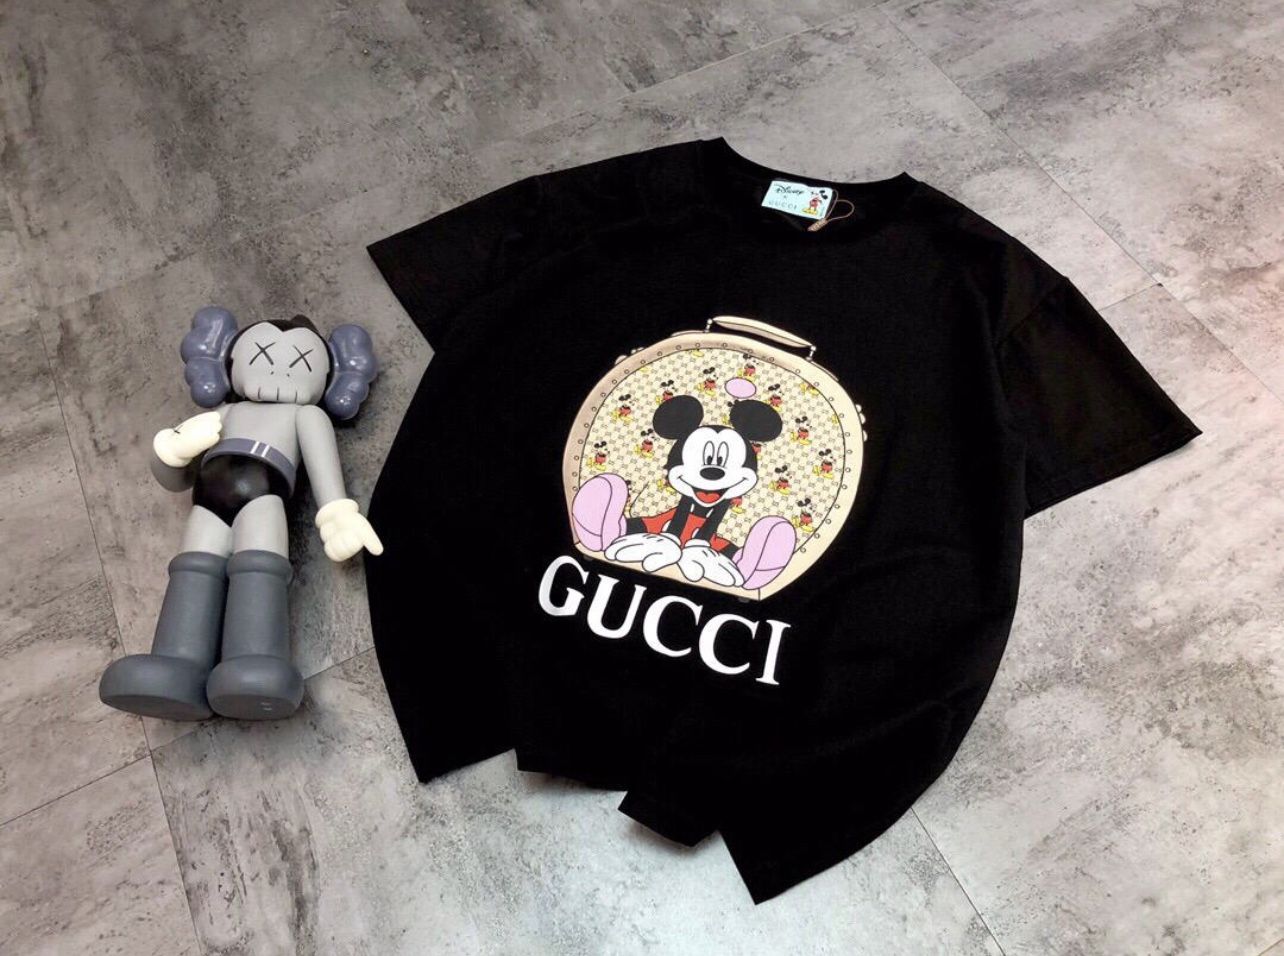 Gucci Shirt For Women.